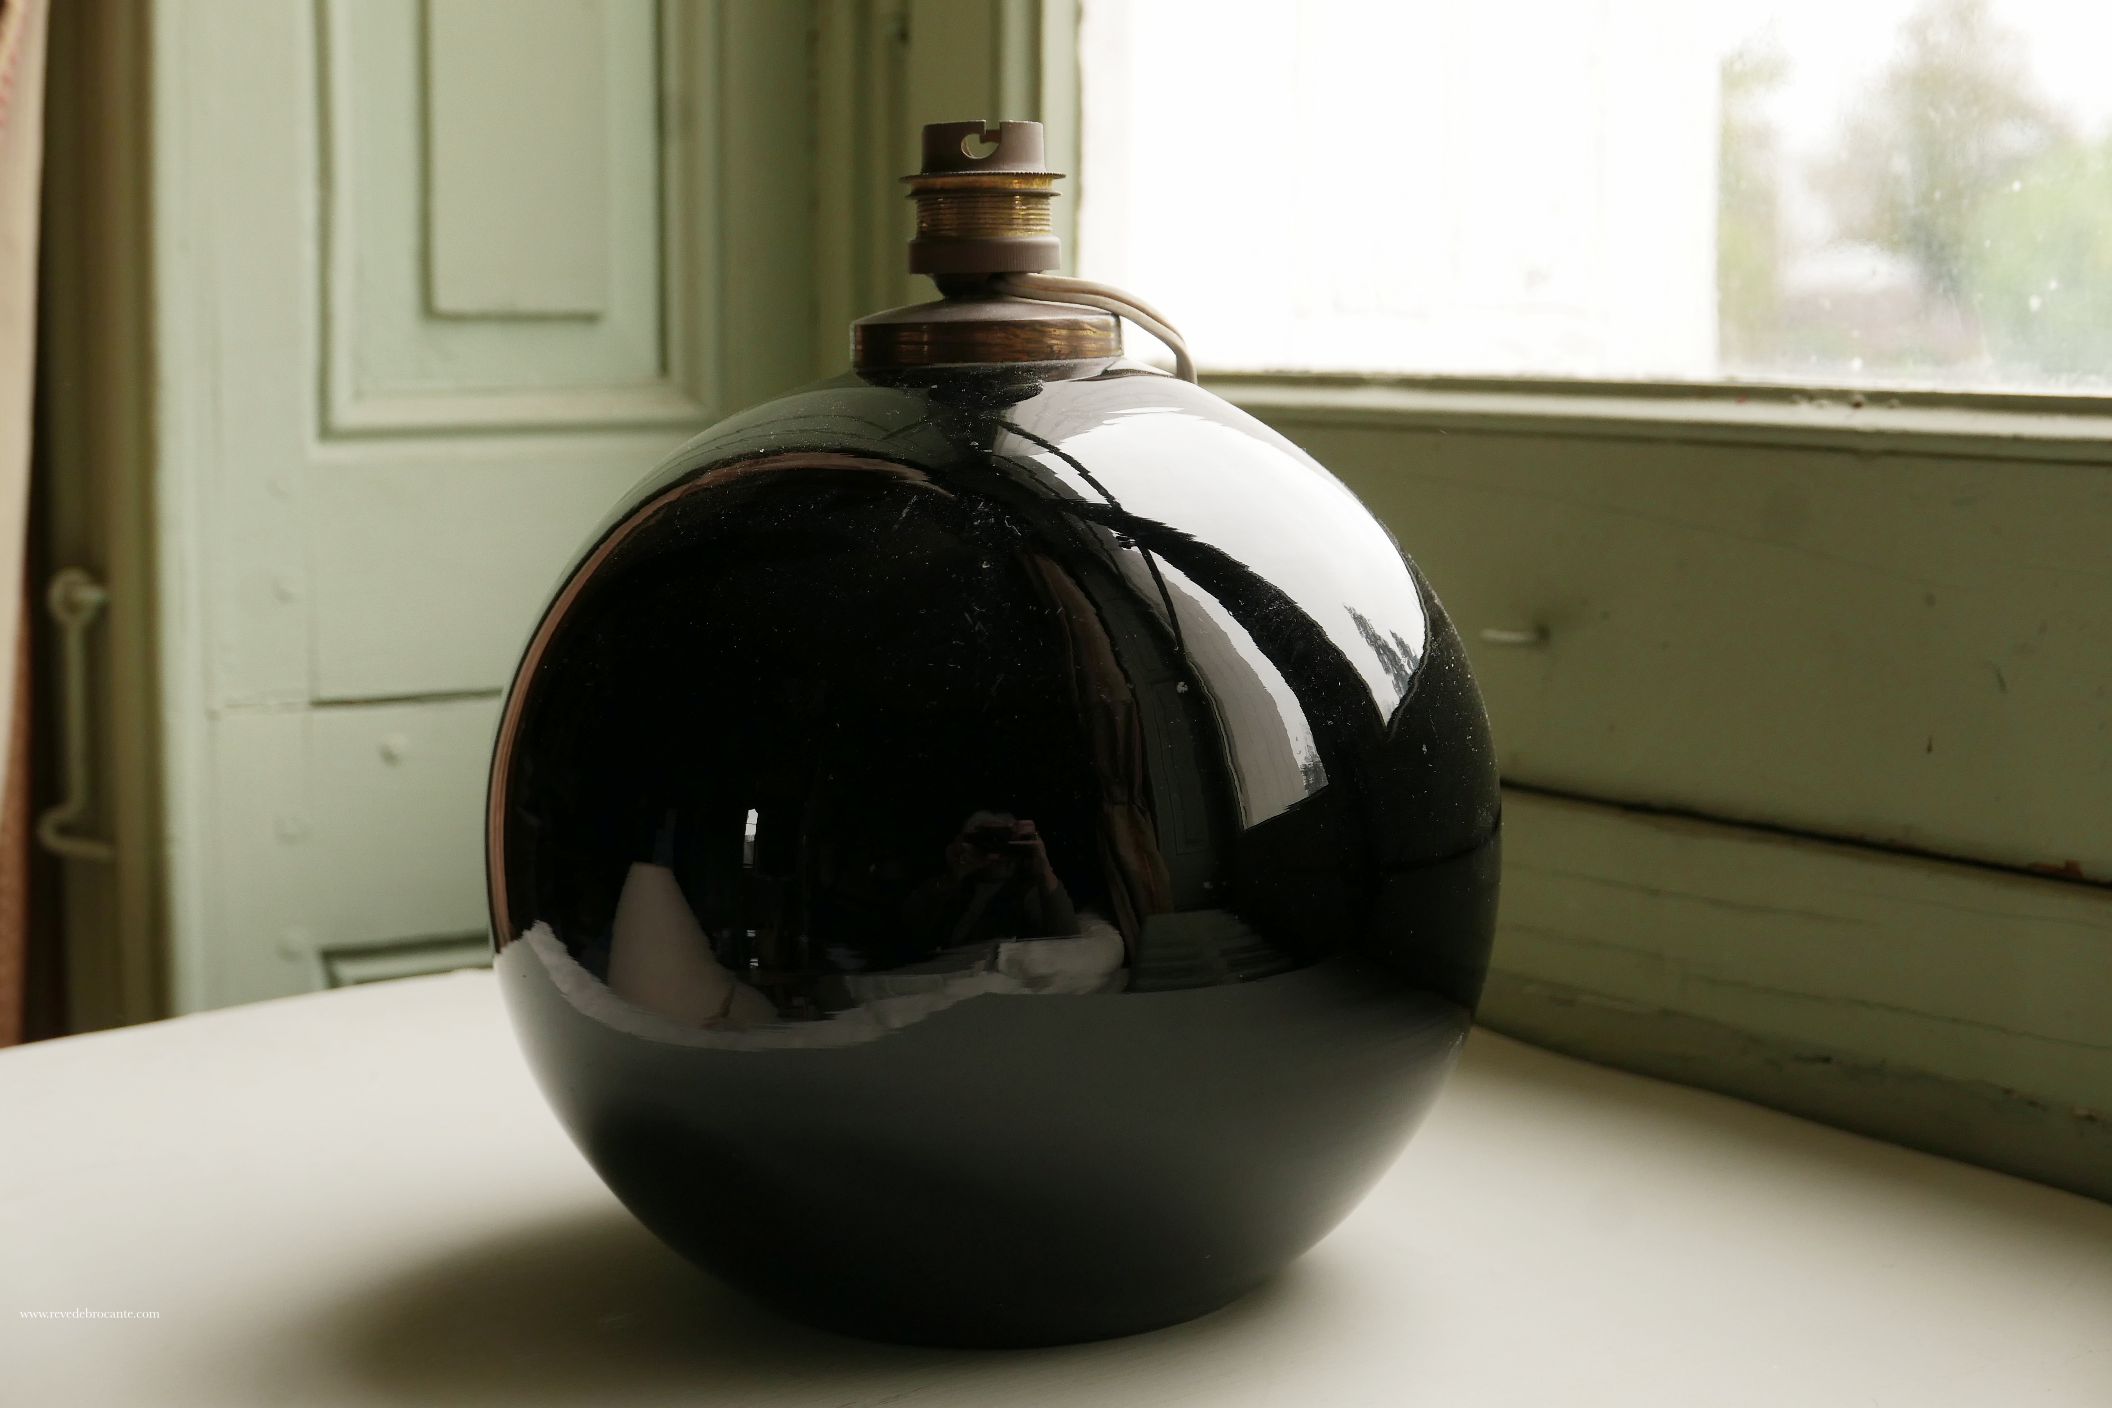 Lampe boule en opaline noire années 30/40 attribué à Adnet - Rêve